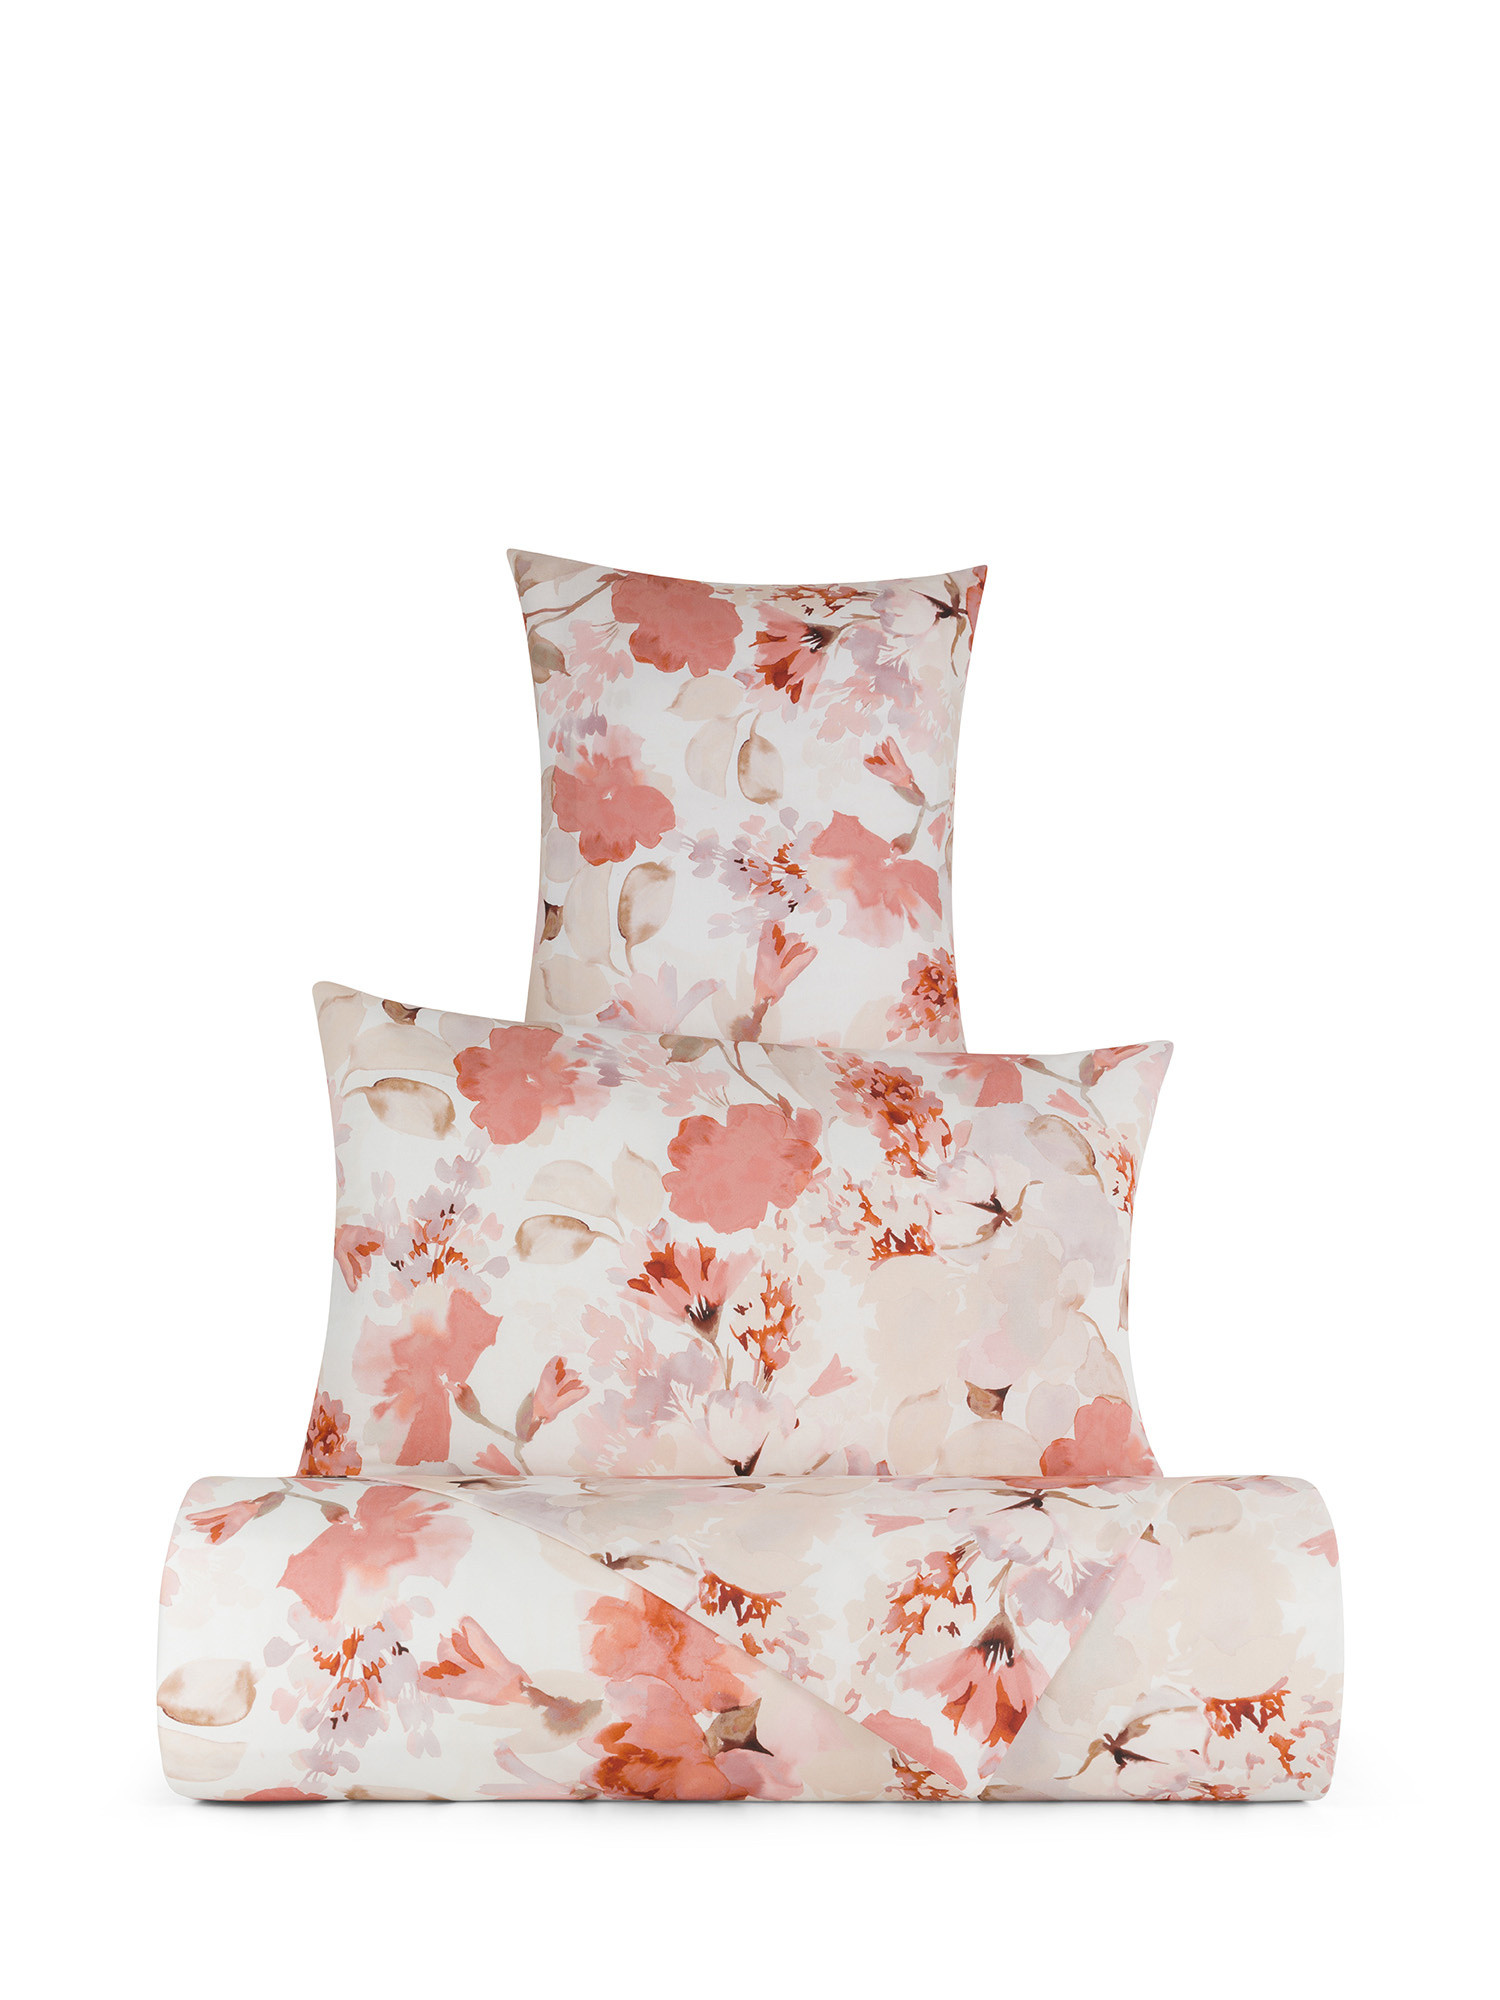 Floral patterned cotton duvet cover set, Multicolor, large image number 0